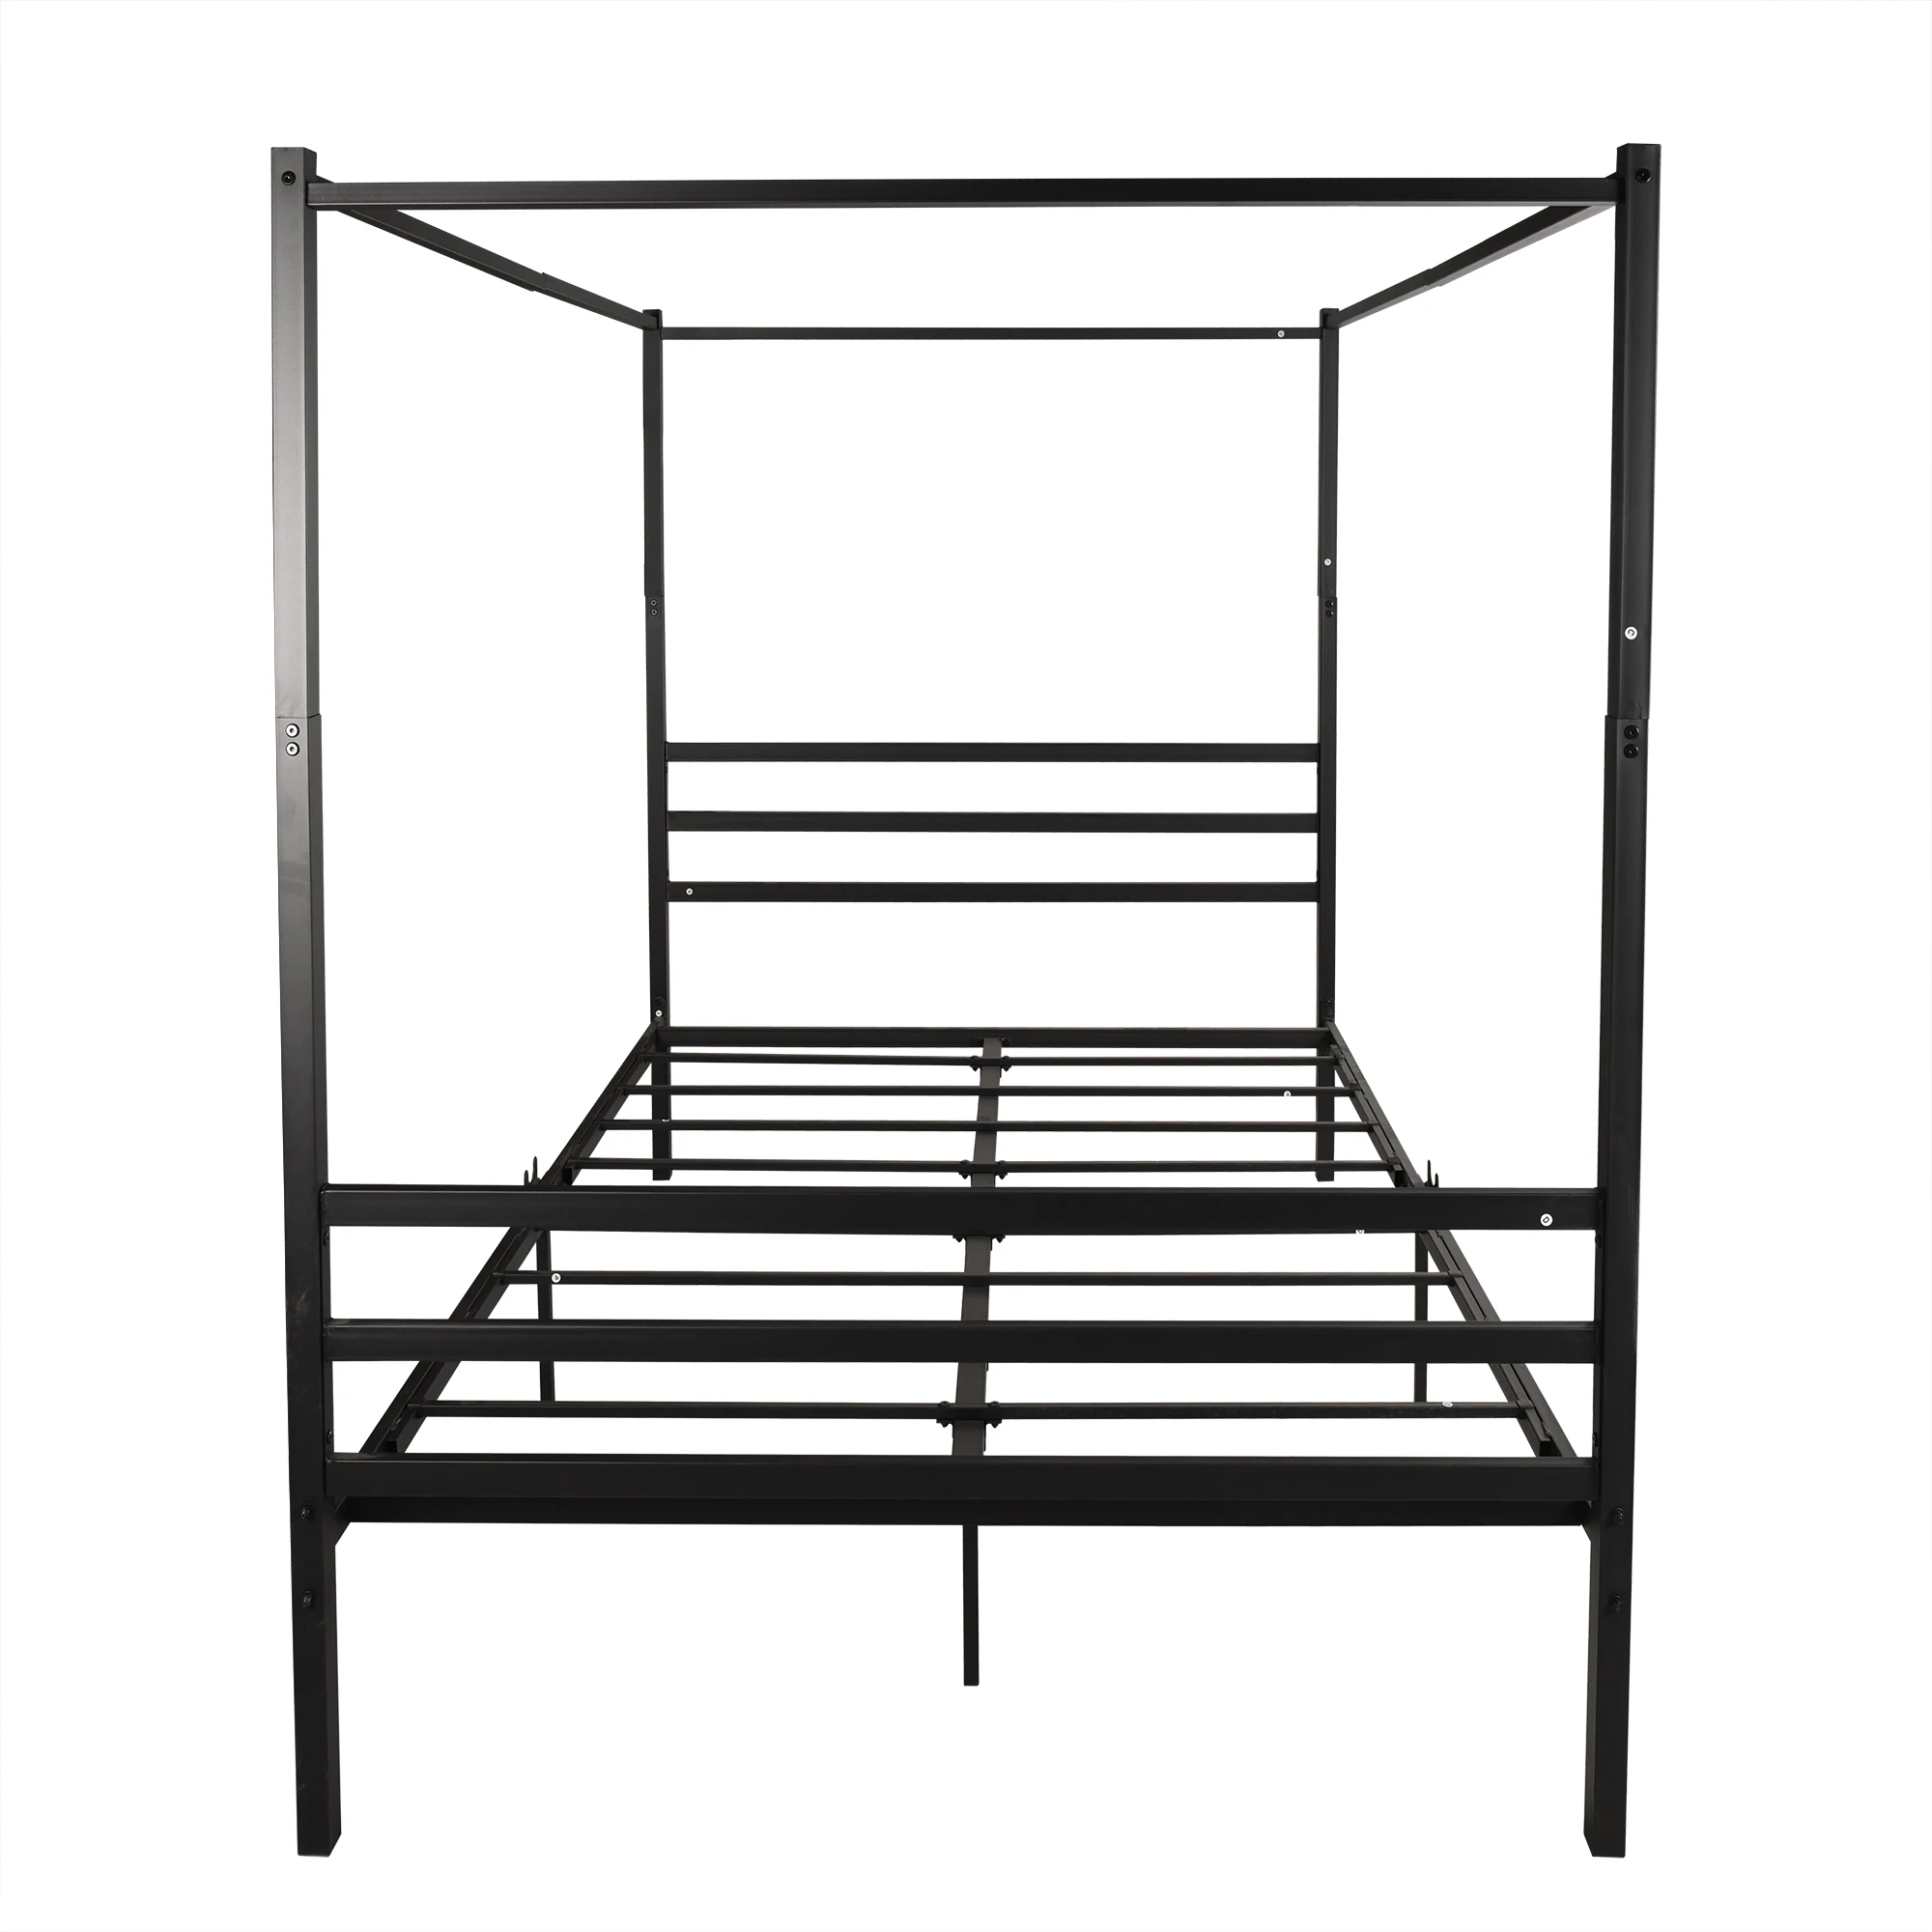 

Королевский размер, металлическая кровать с изголовьем кровати, матрас, основание, платформа, рамка для кровати, цвет черный [искусственная кожа]